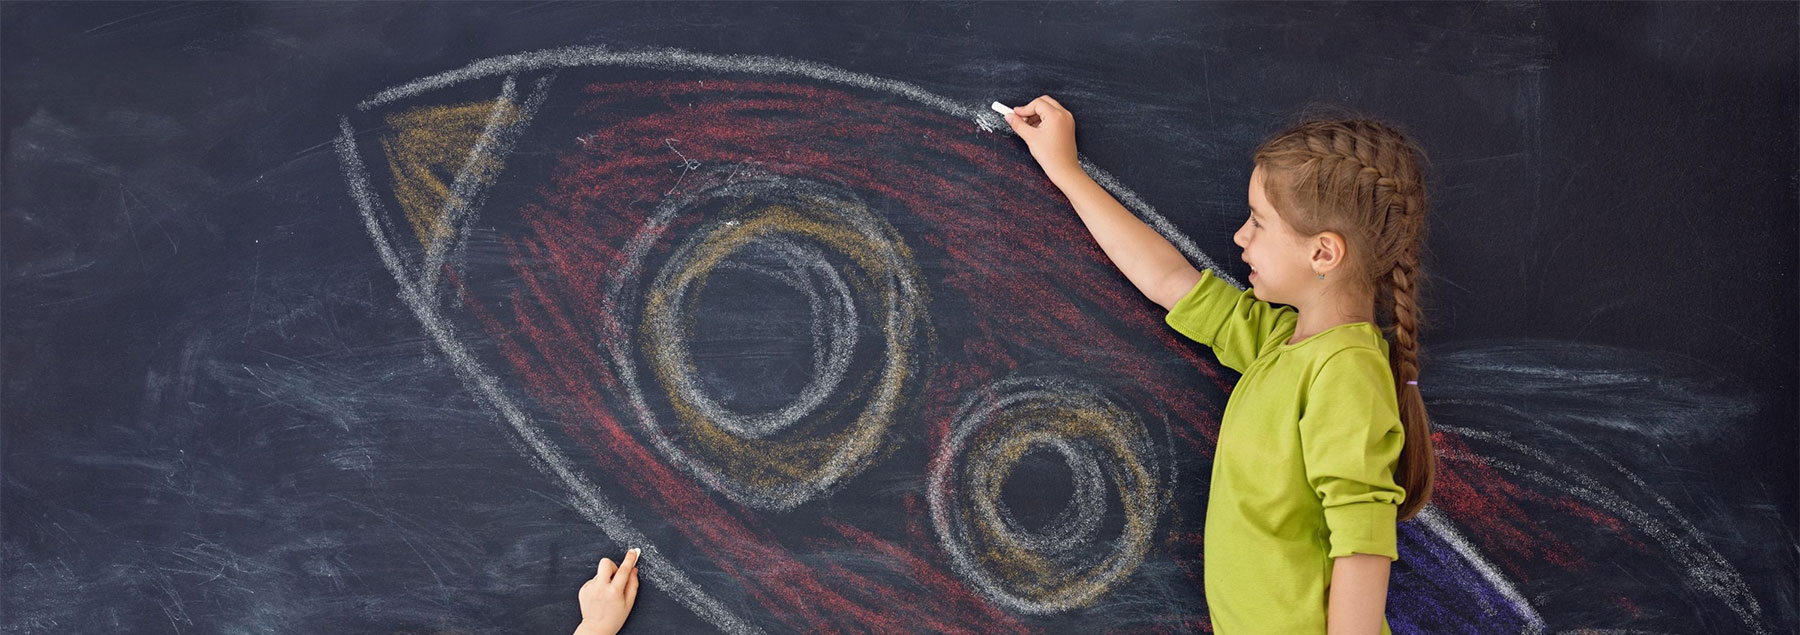 Child drawing a rocket on a blackboard